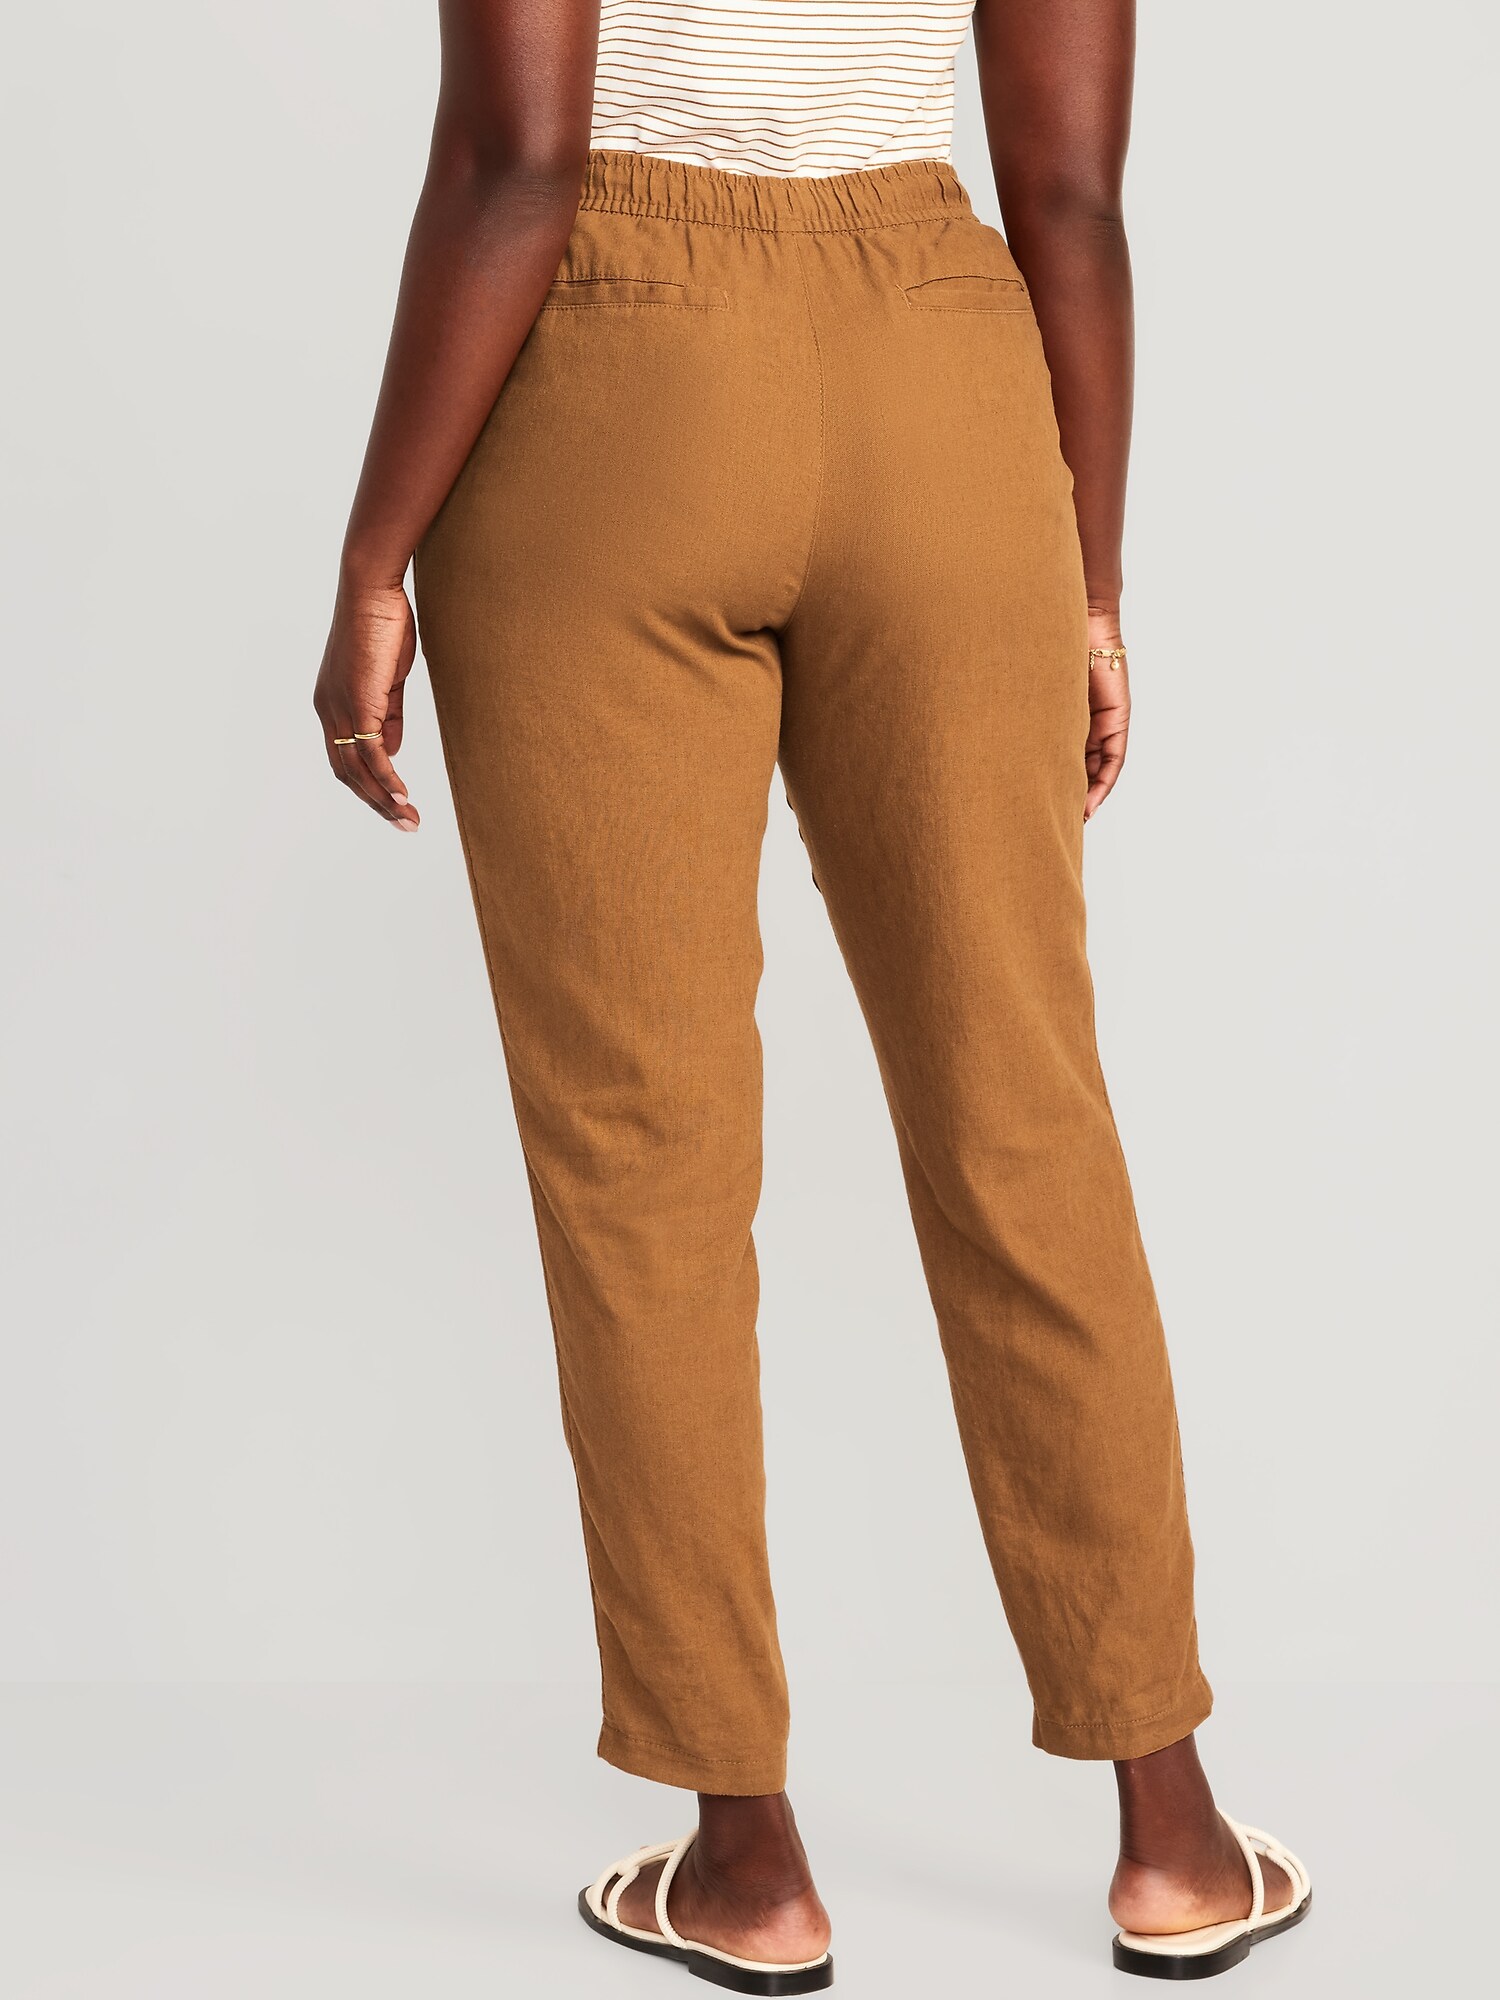 Linen Pants KARTER, Linen Crop Pants, Relaxed Linen Pants, Casual Linen  Pants -  Canada